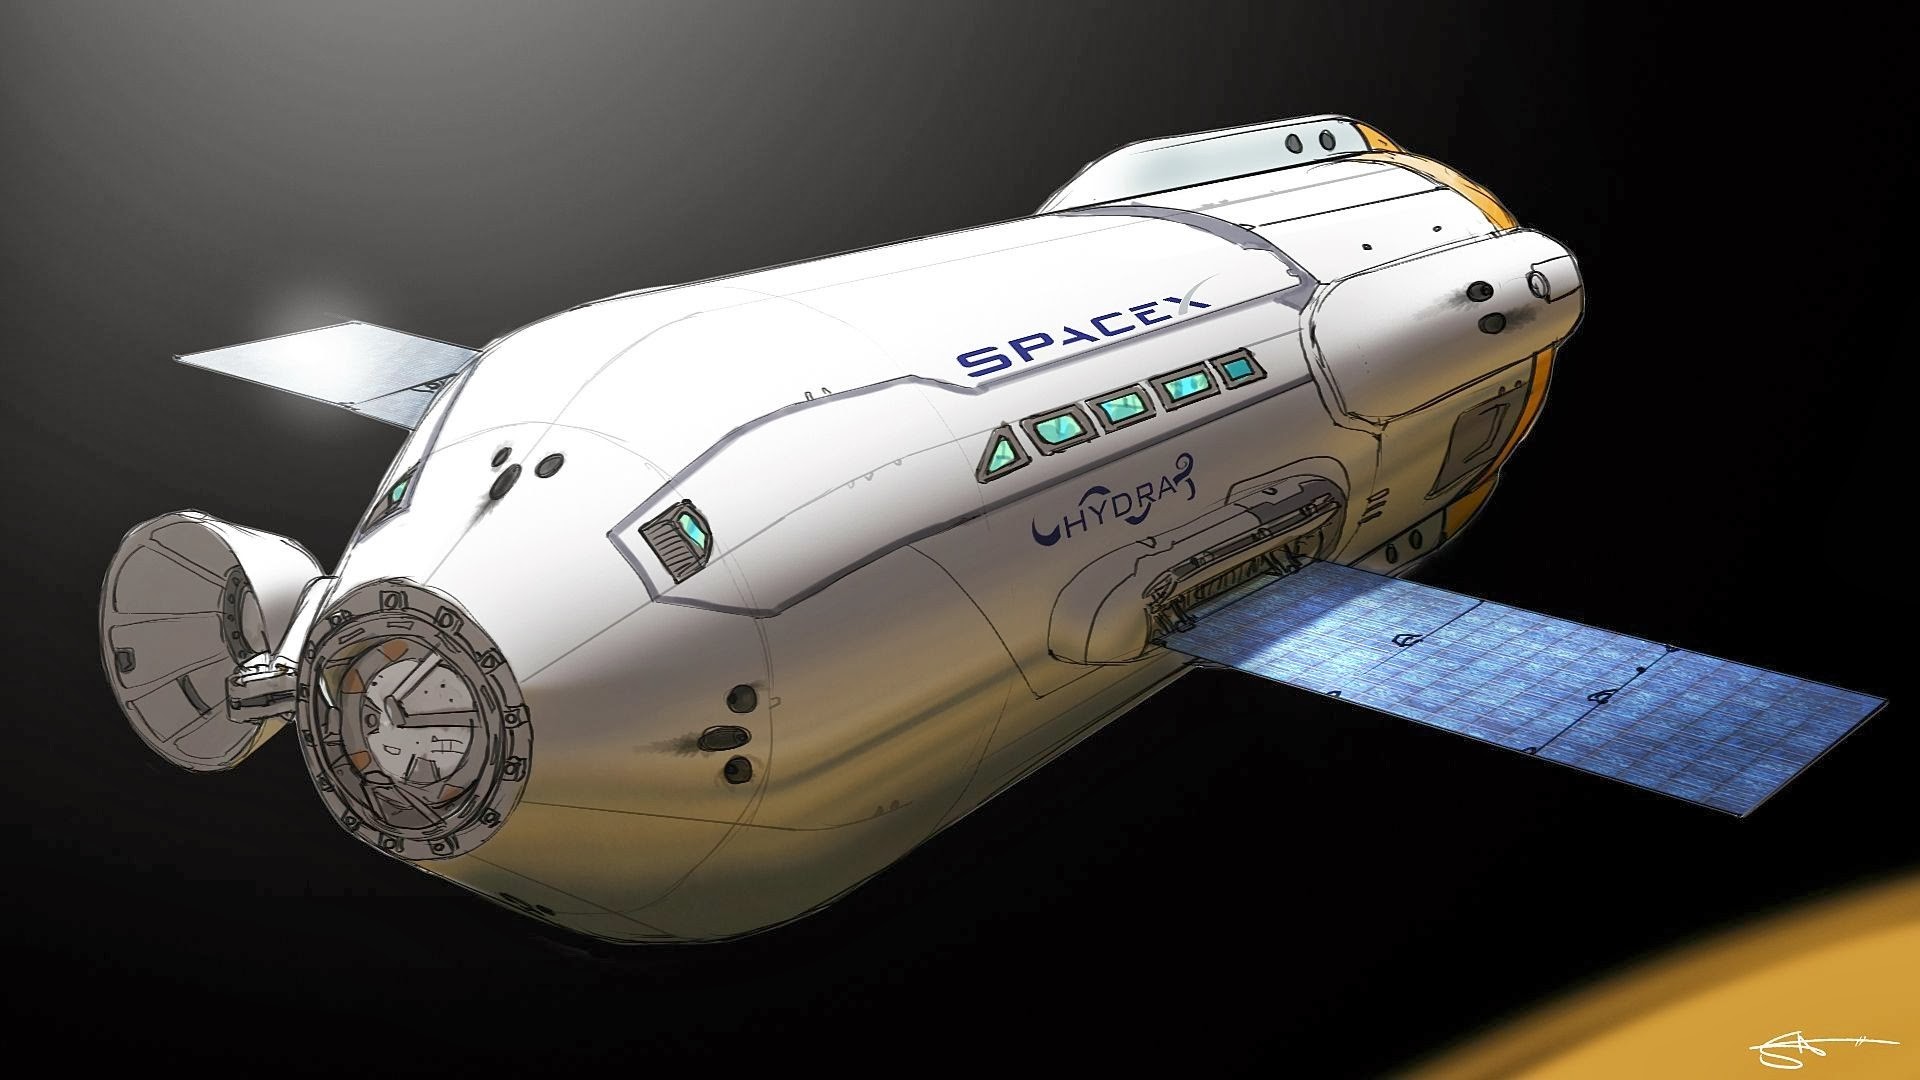 General 1920x1080 spaceship artwork space SpaceX satellite vehicle